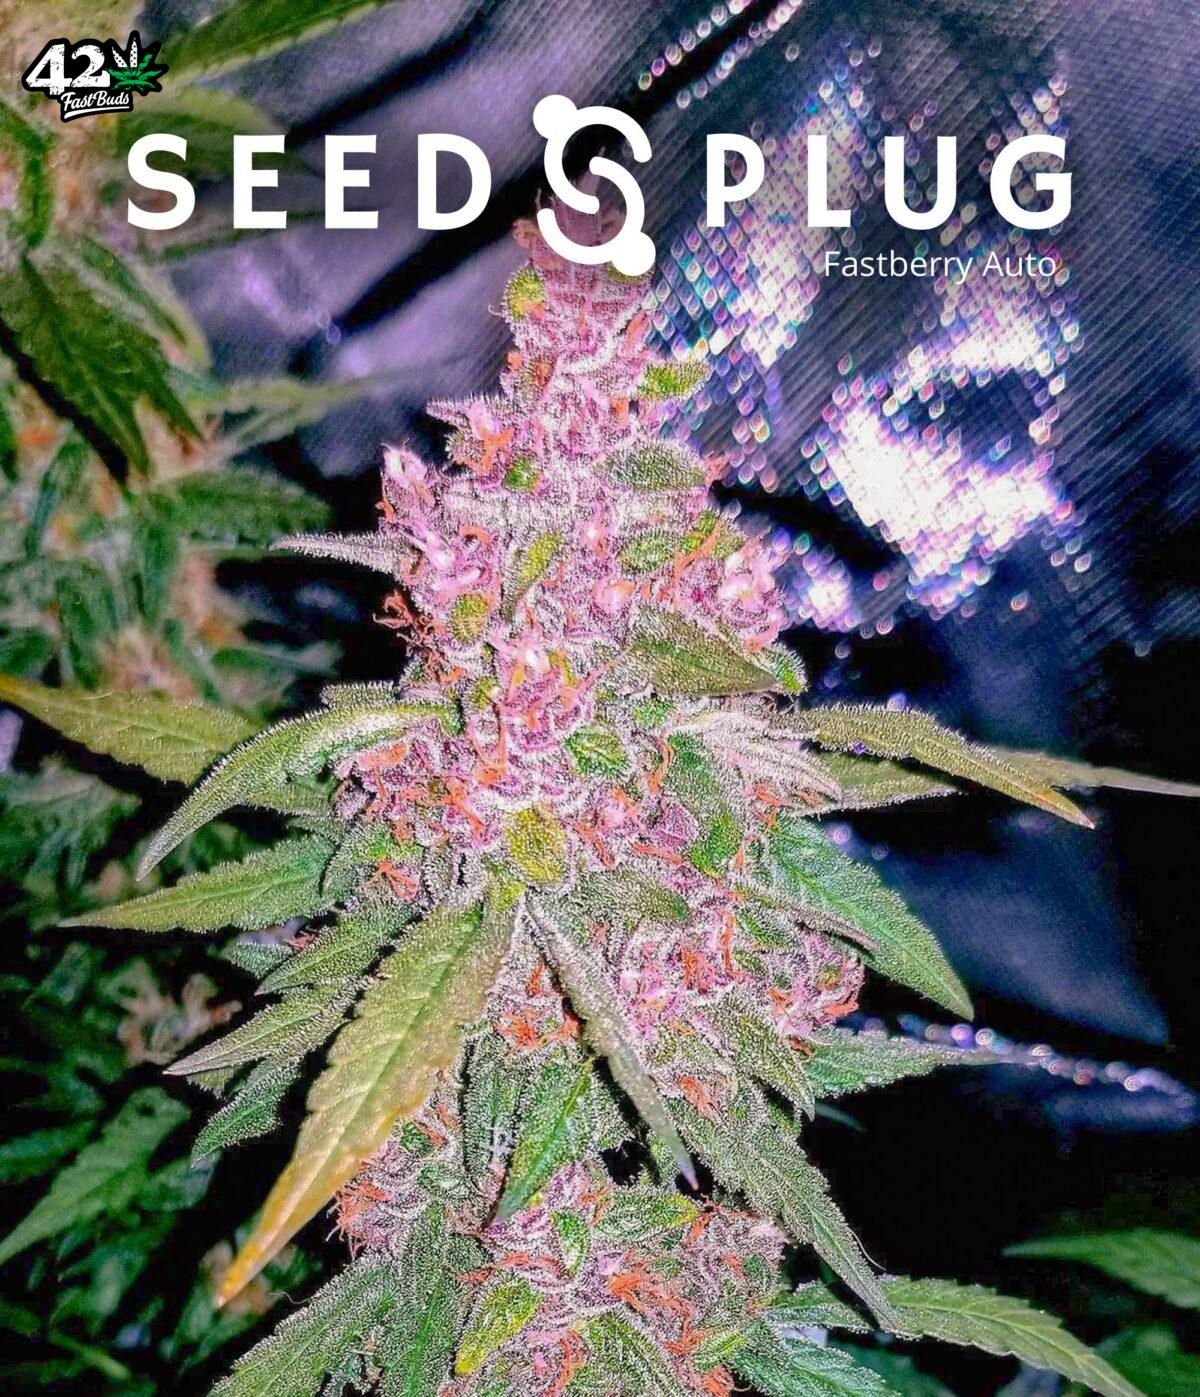 Fastberry Auto | SeedsPlug